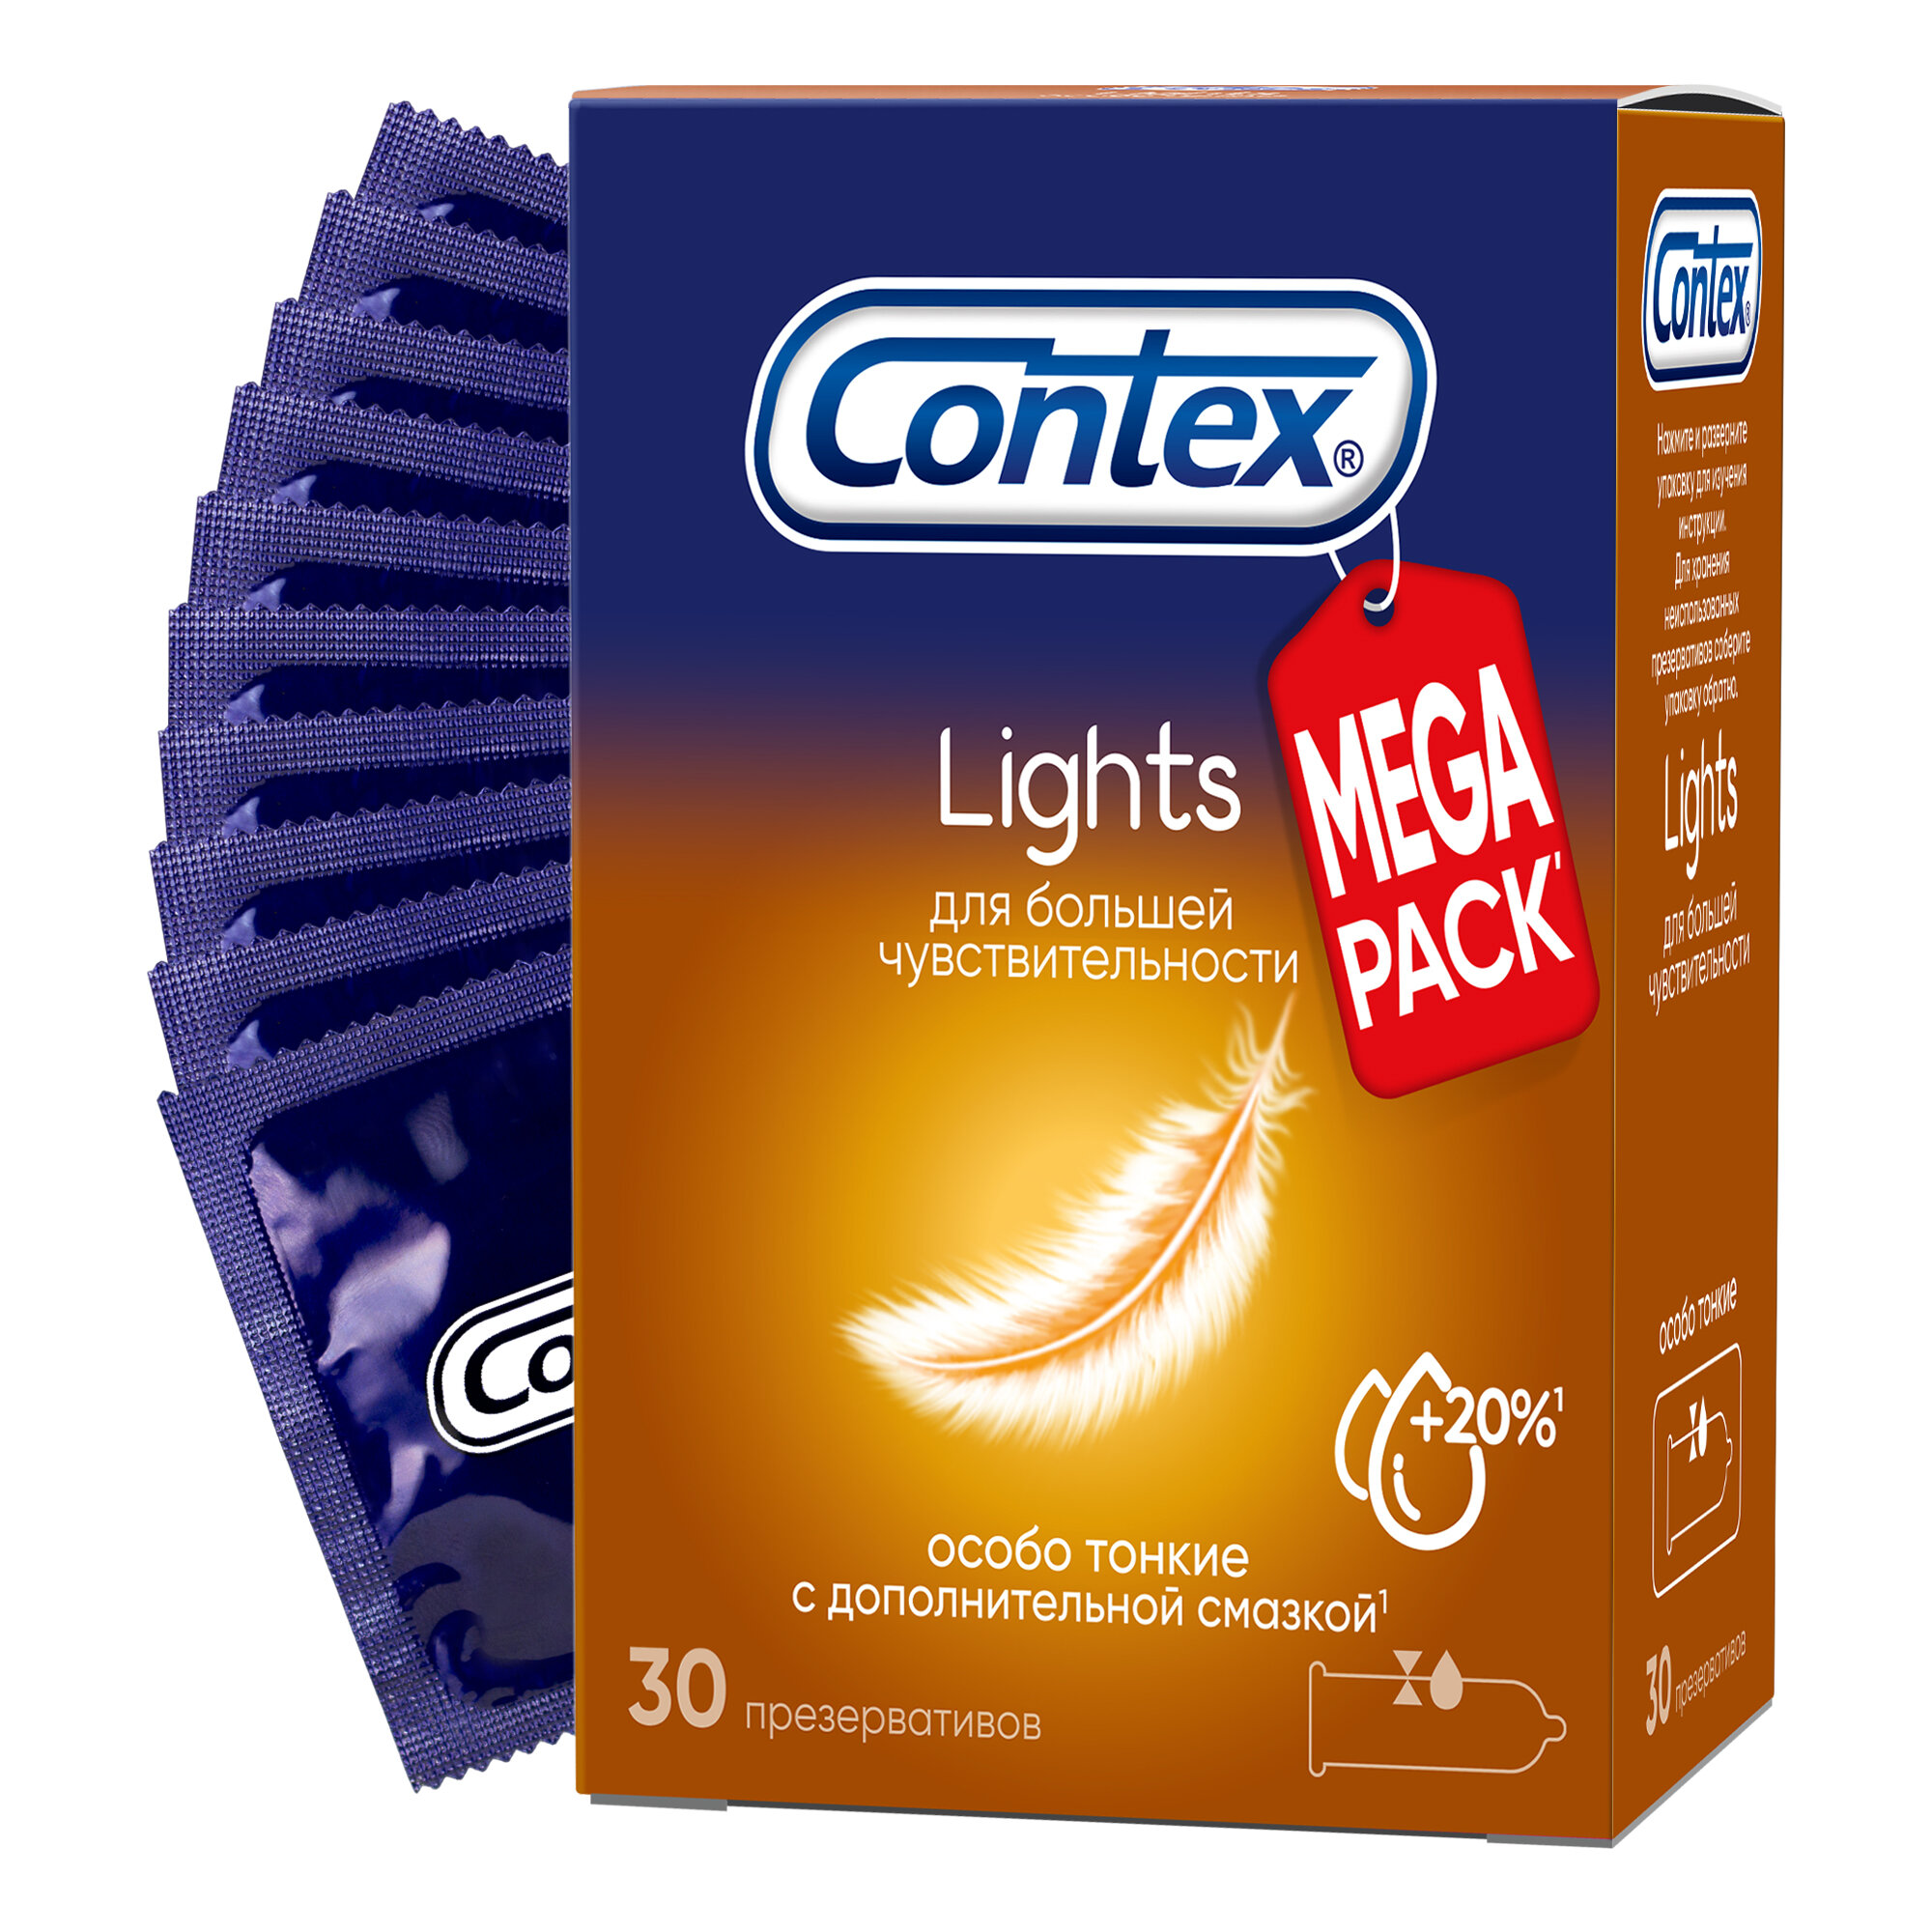 Презервативы Contex Lights, особо тонкие, 30 шт.